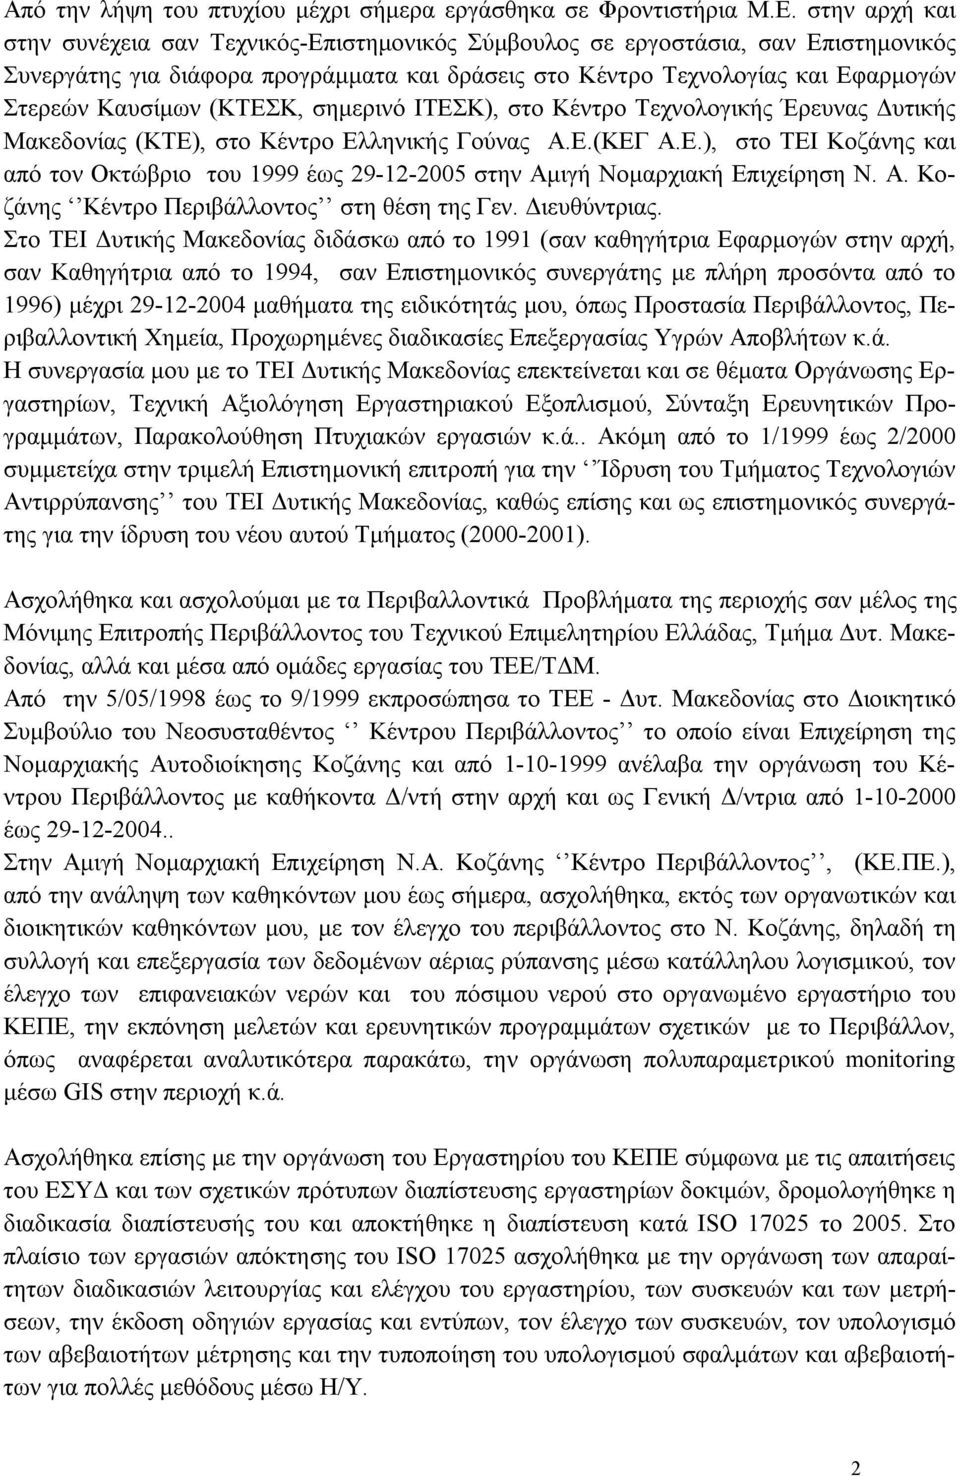 (ΚΤΕΣΚ, σημερινό ΙΤΕΣΚ), στο Κέντρο Τεχνολογικής Έρευνας Δυτικής Μακεδονίας (ΚΤΕ), στο Κέντρο Ελληνικής Γούνας Α.Ε.(ΚΕΓ Α.Ε.), στο ΤΕΙ Κοζάνης και από τον Οκτώβριο του 1999 έως 29-12-2005 στην Αμιγή Νομαρχιακή Επιχείρηση Ν.